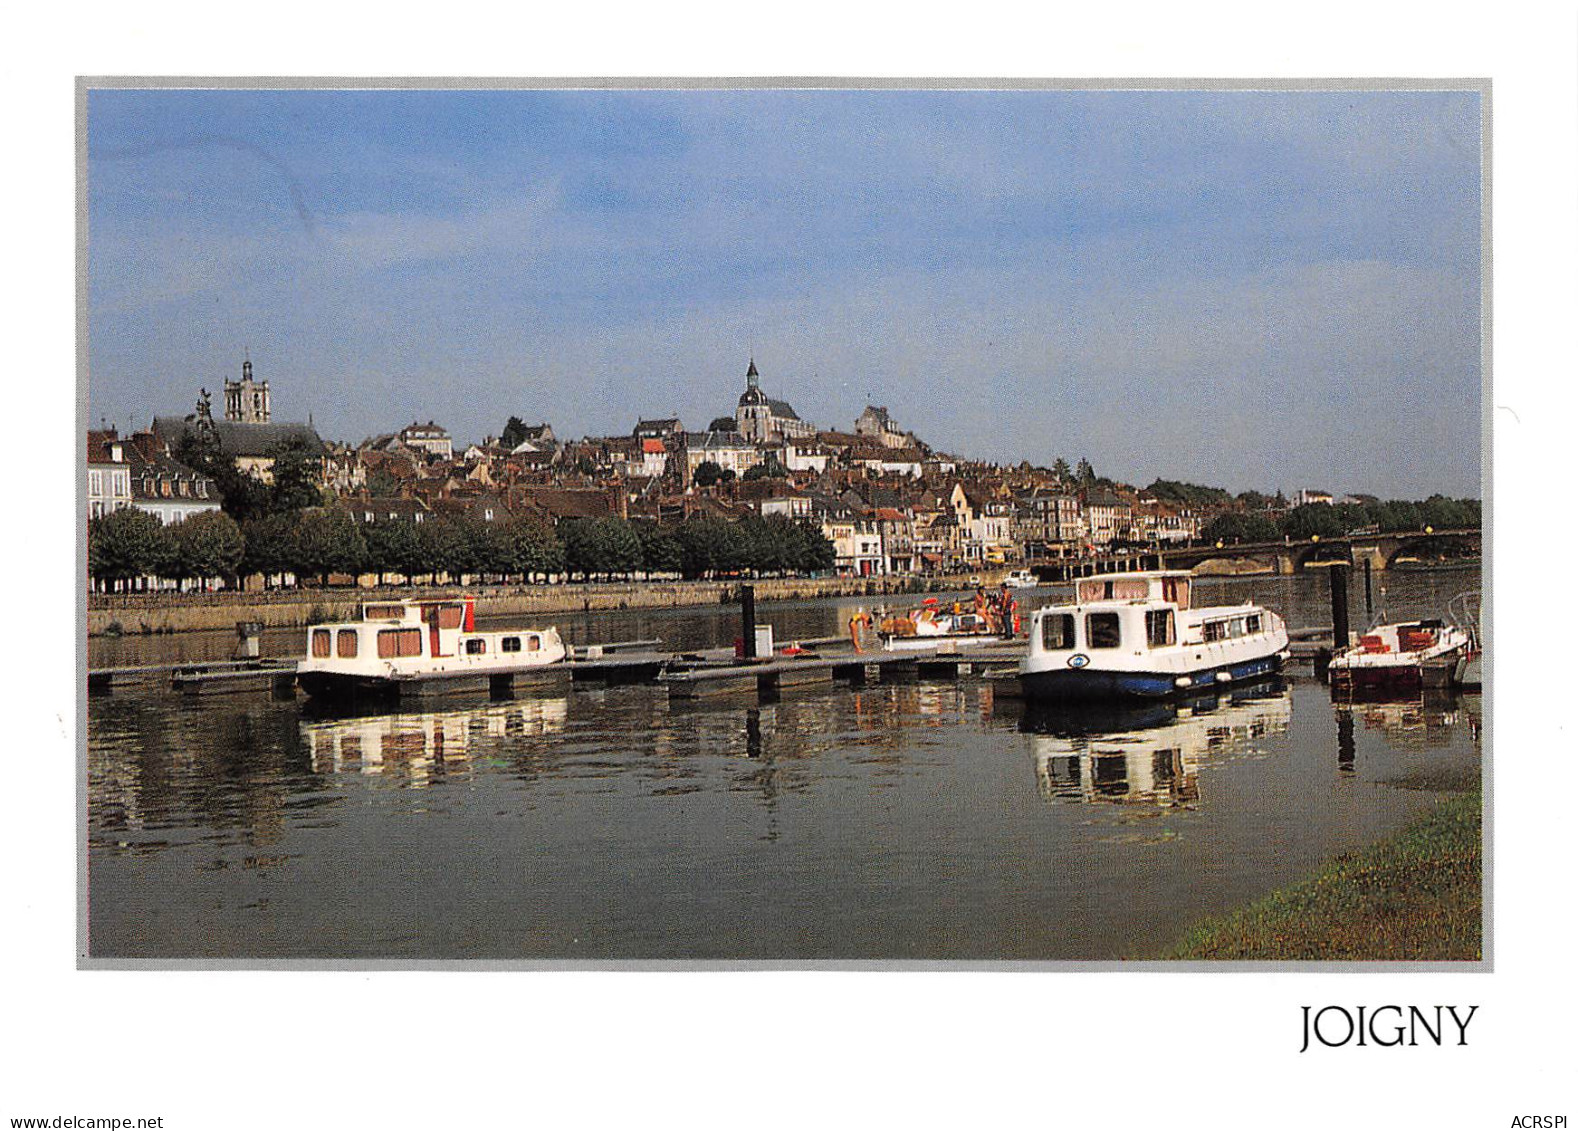 89 JOIGNY Péniches Et Pont Sur L'yonne Carte Vierge Non Circulé édition Combier (Scans R/V) N° 2 \MO7047 - Joigny